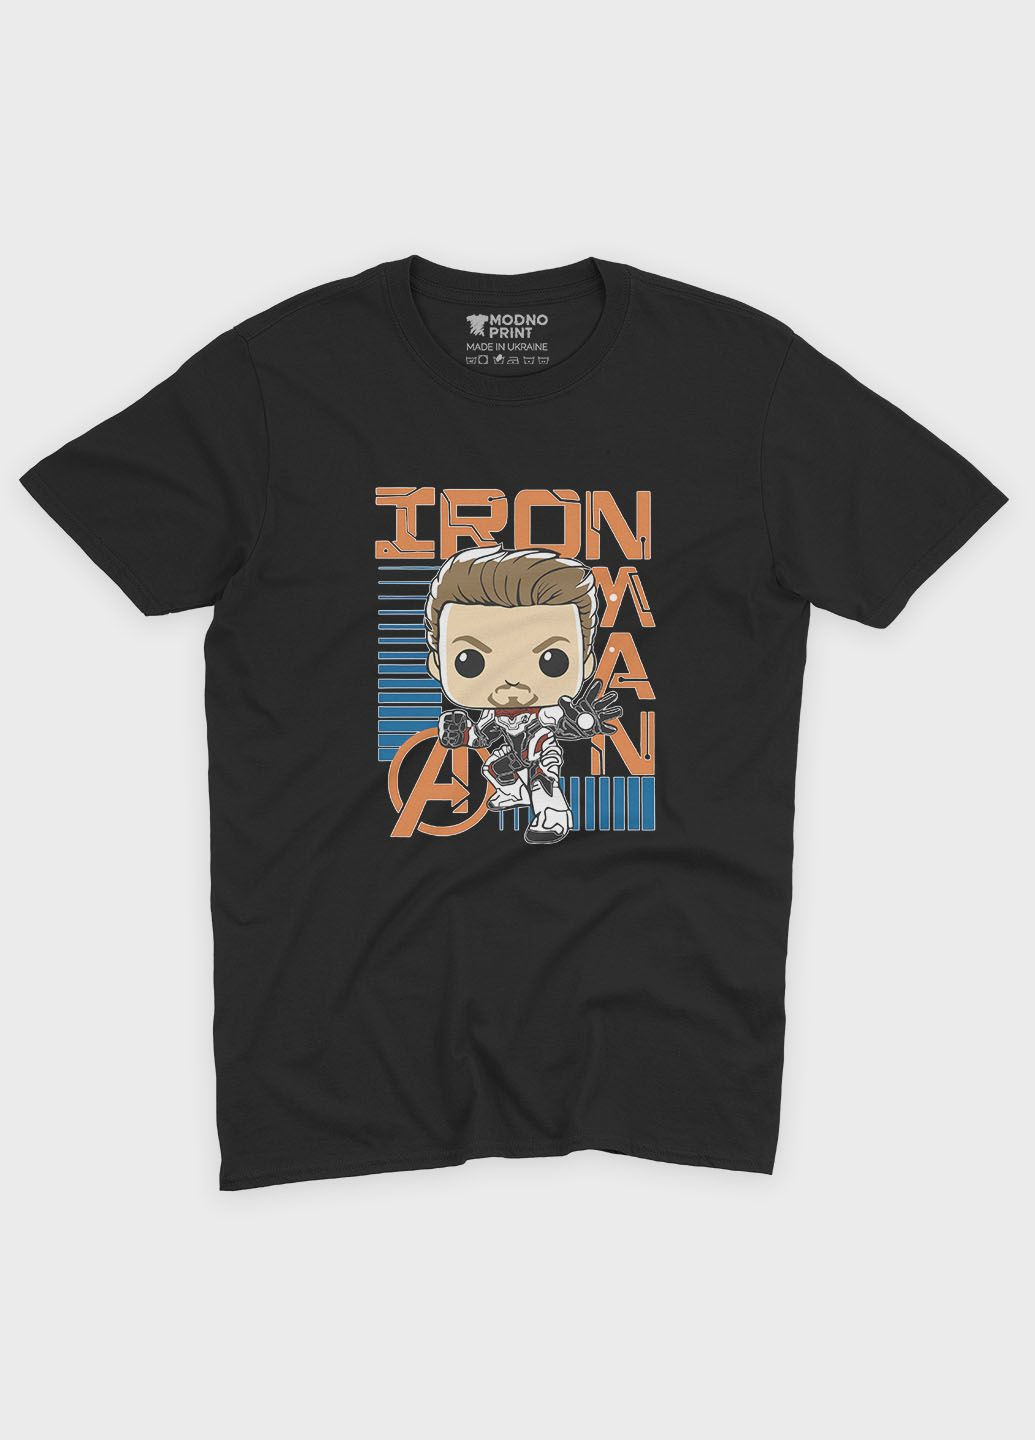 Черная демисезонная футболка для мальчика с принтом супергероя - железный человек (ts001-1-bl-006-016-022-b) Modno